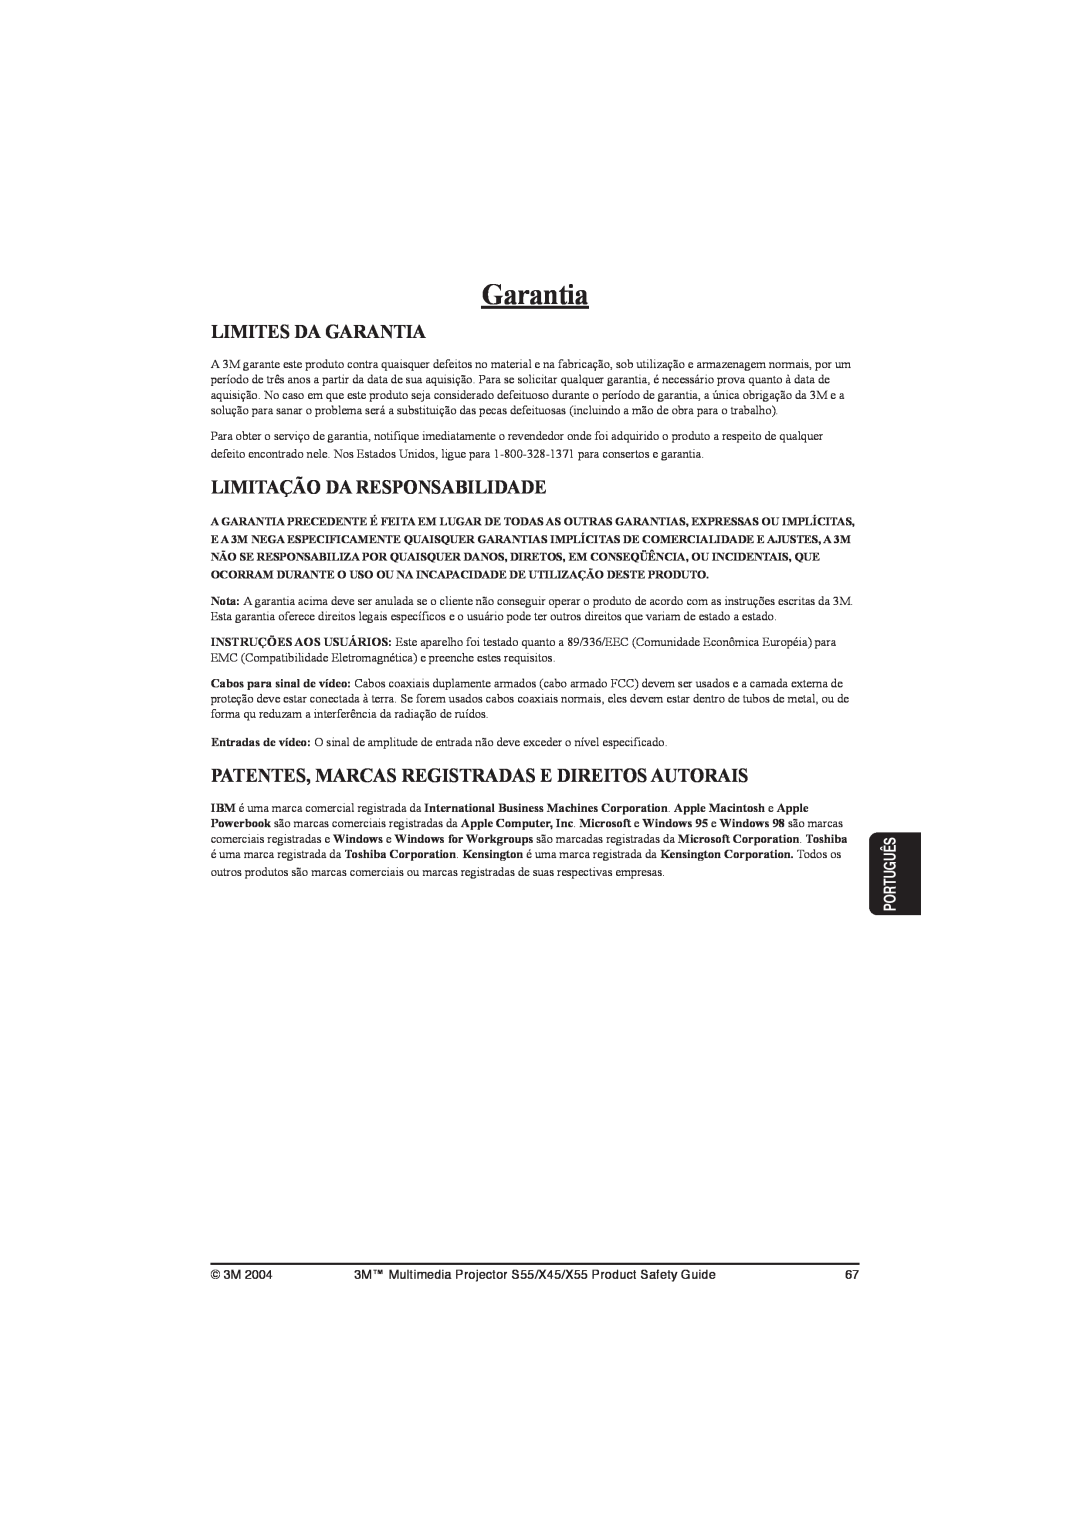 3M S55 Limites Da Garantia, Limitação Da Responsabilidade, Patentes, Marcas Registradas E Direitos Autorais, Português 